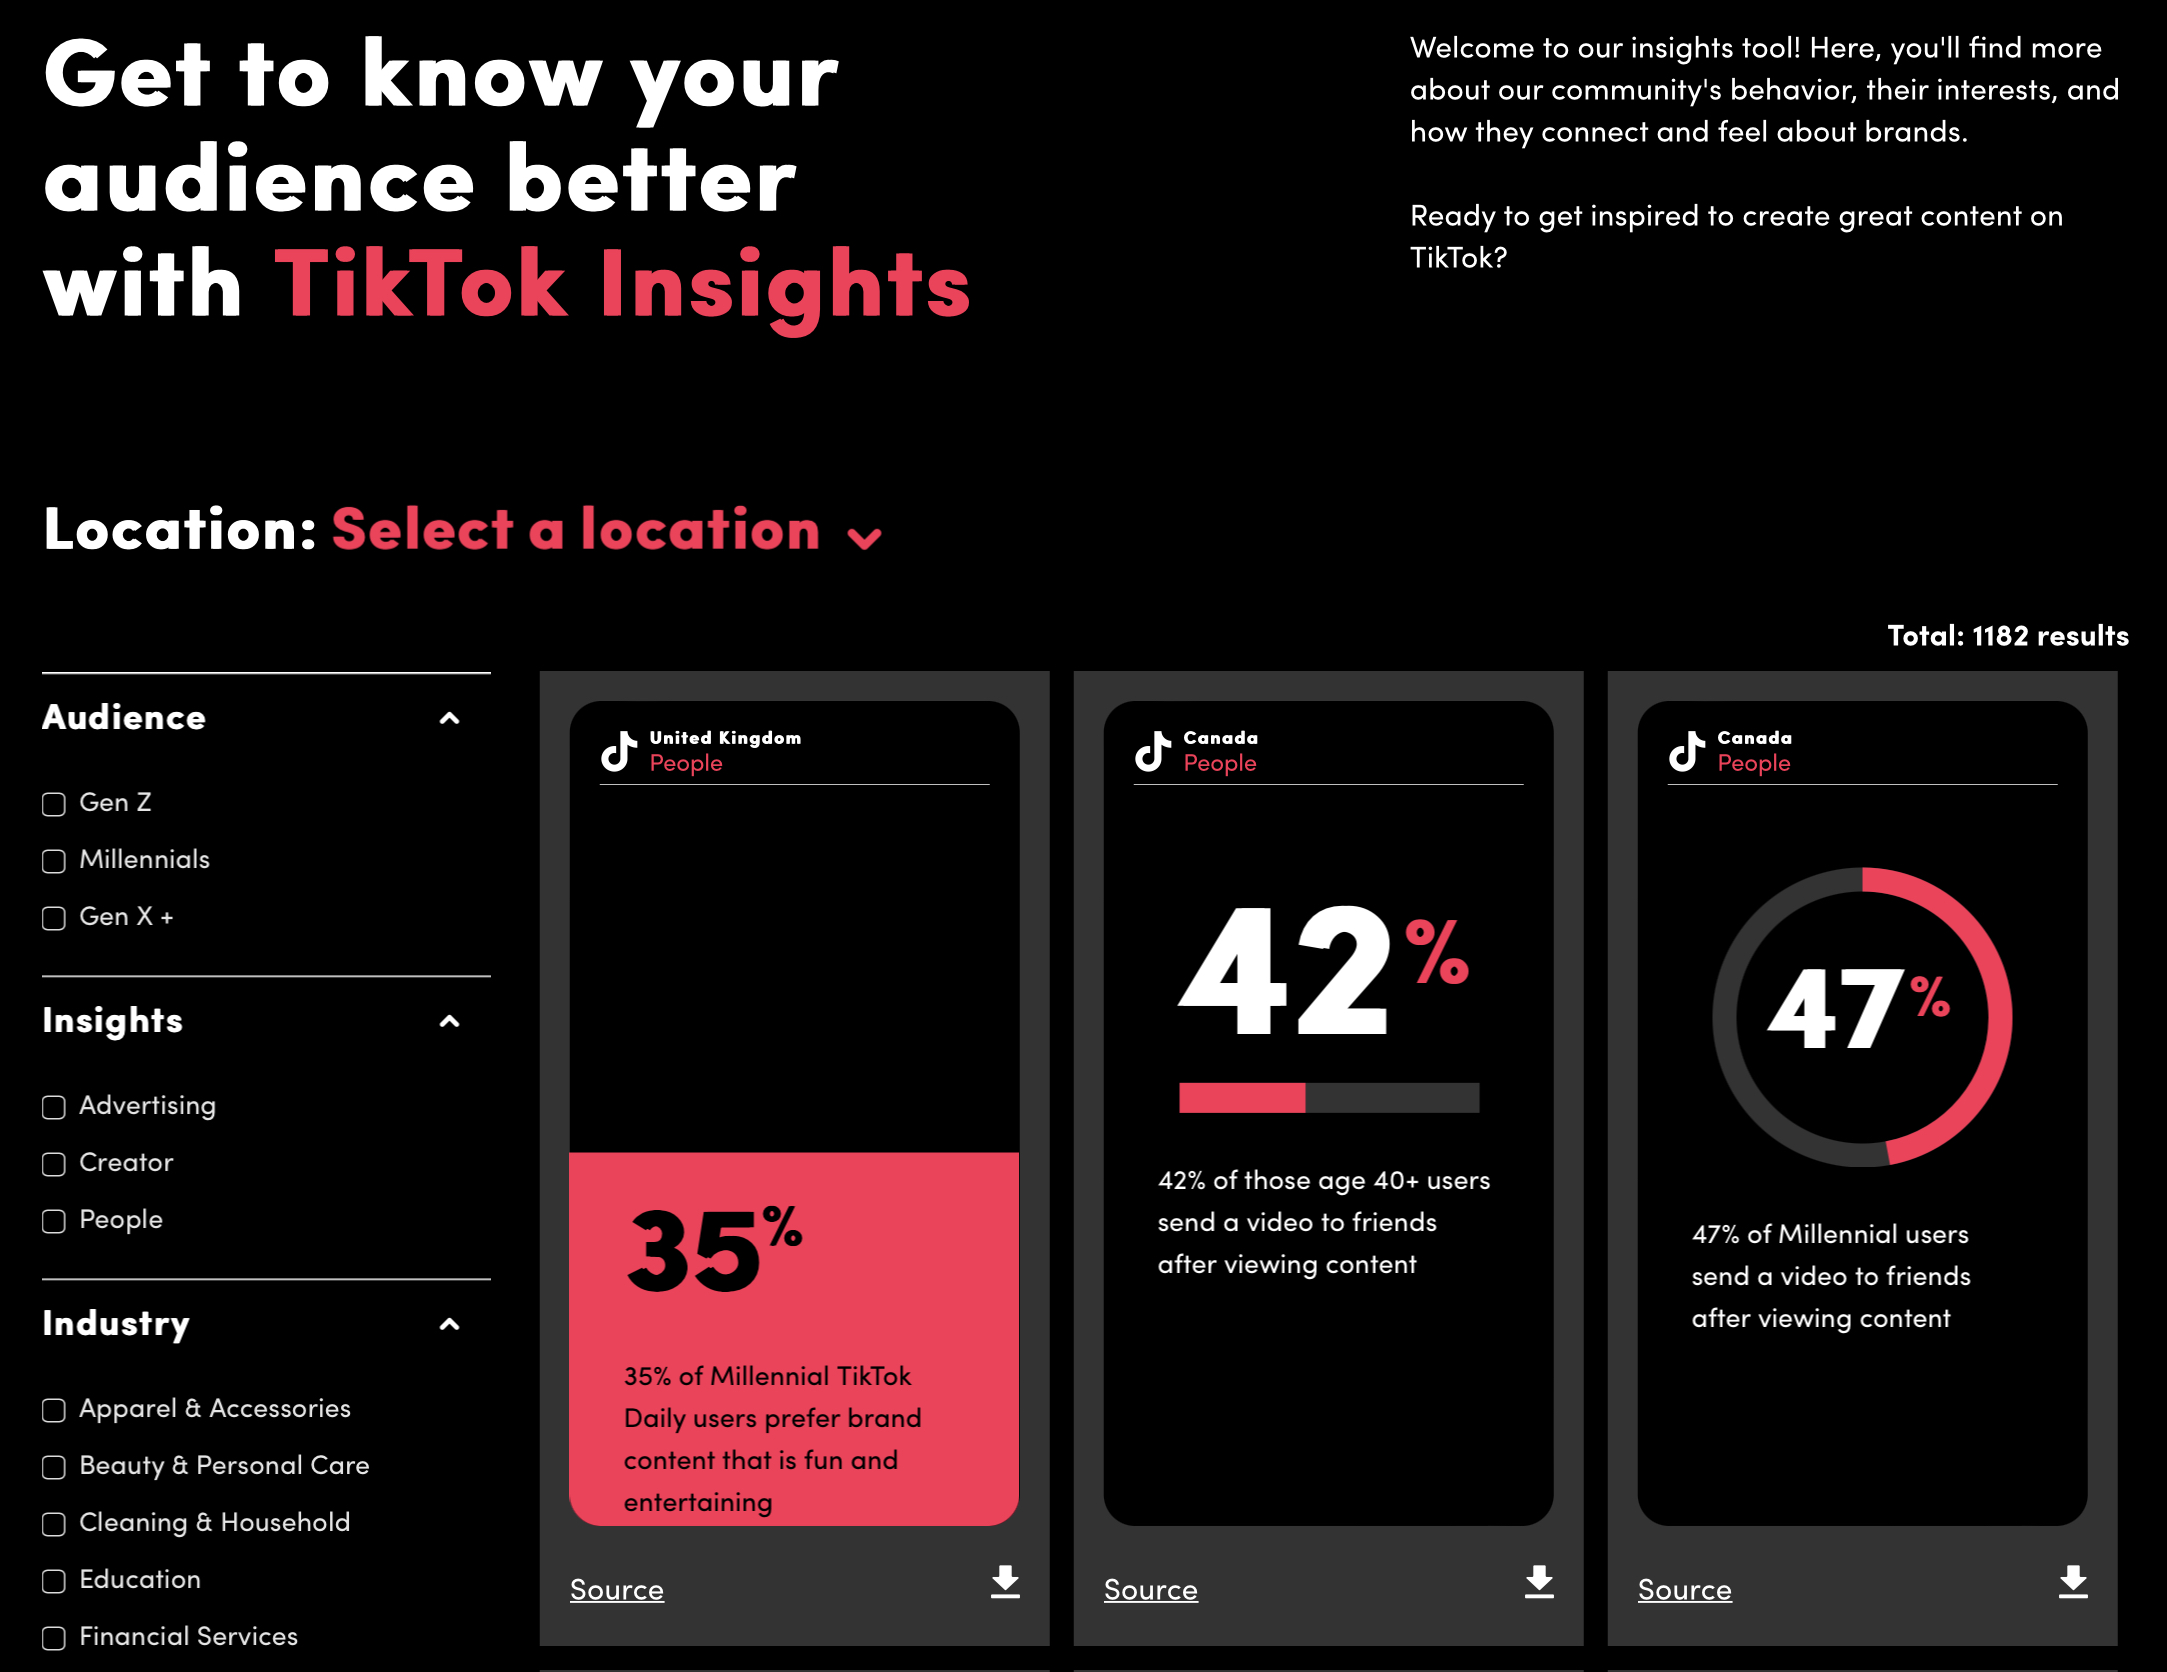 Le nouvel outil TikTok présente des informations utiles pour les spécialistes du marketing